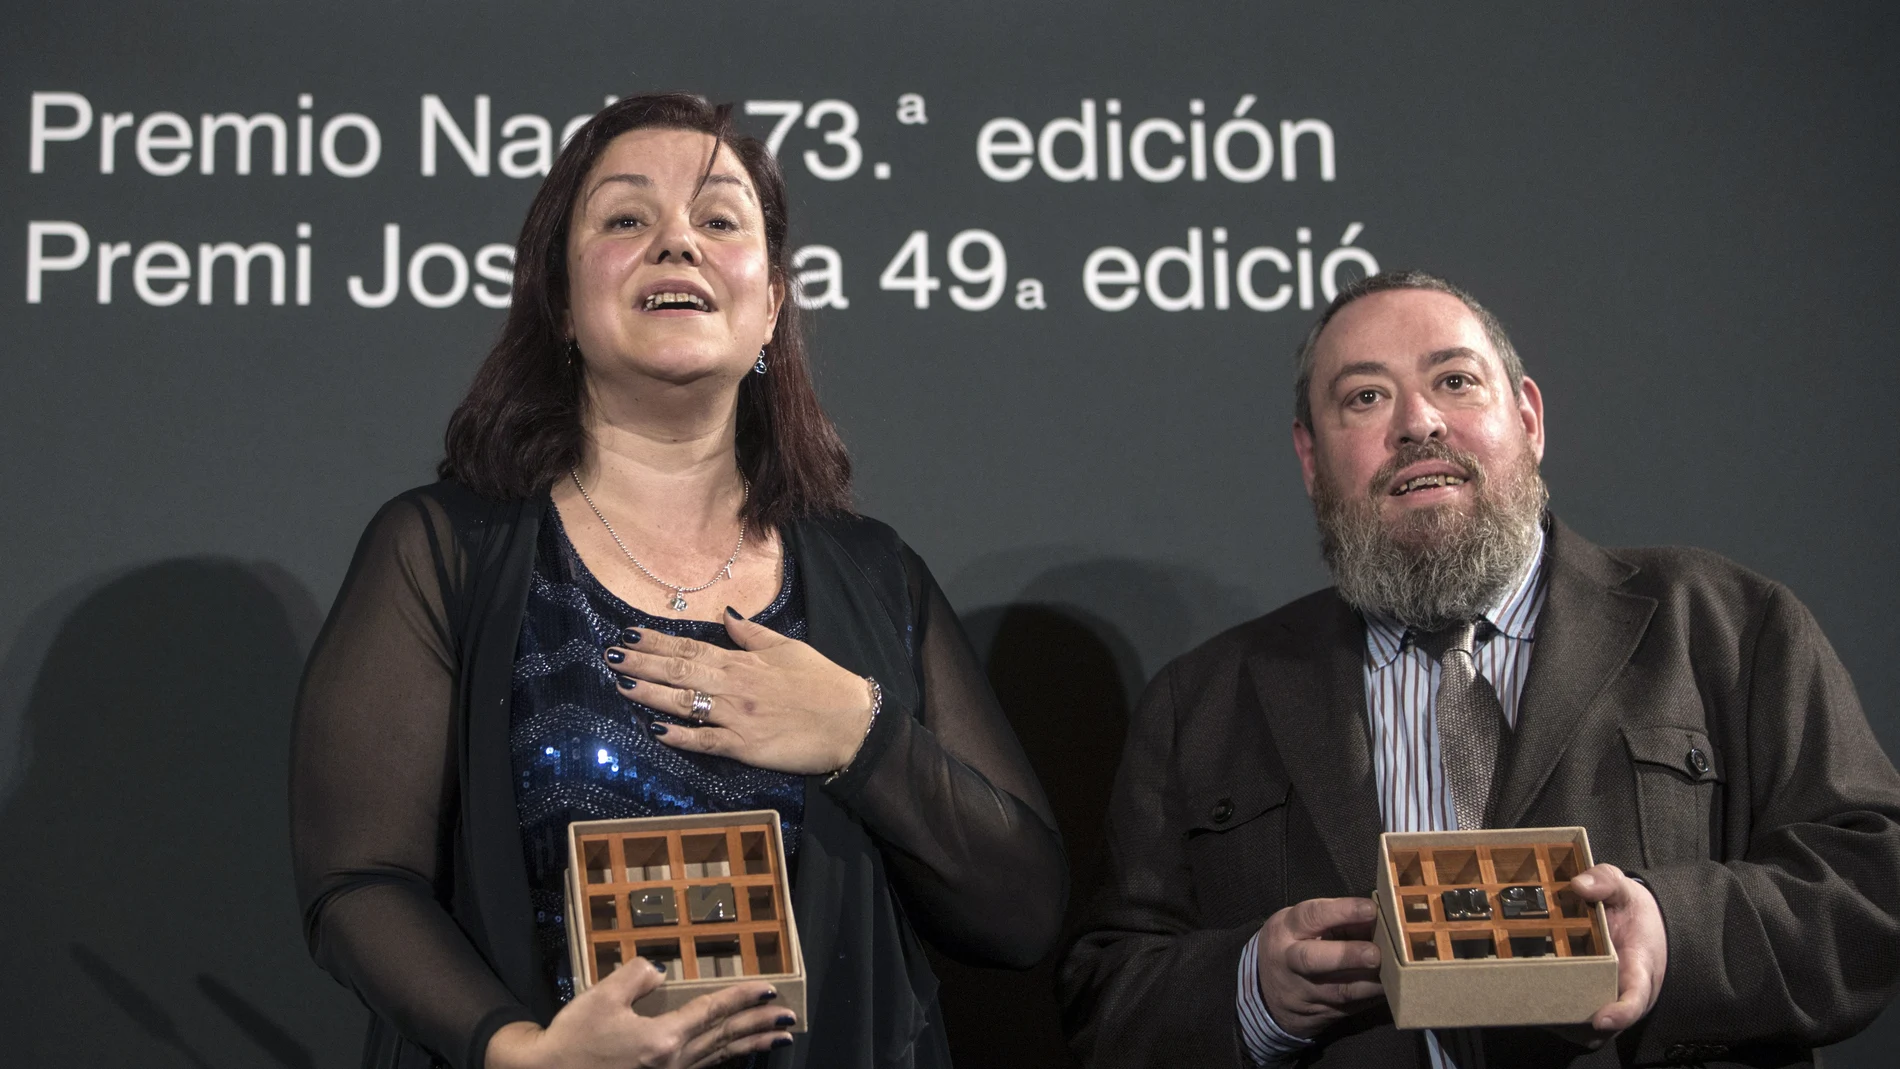 La escritora barcelonesa Care Santos gana el 73 Premio Nadal de novela